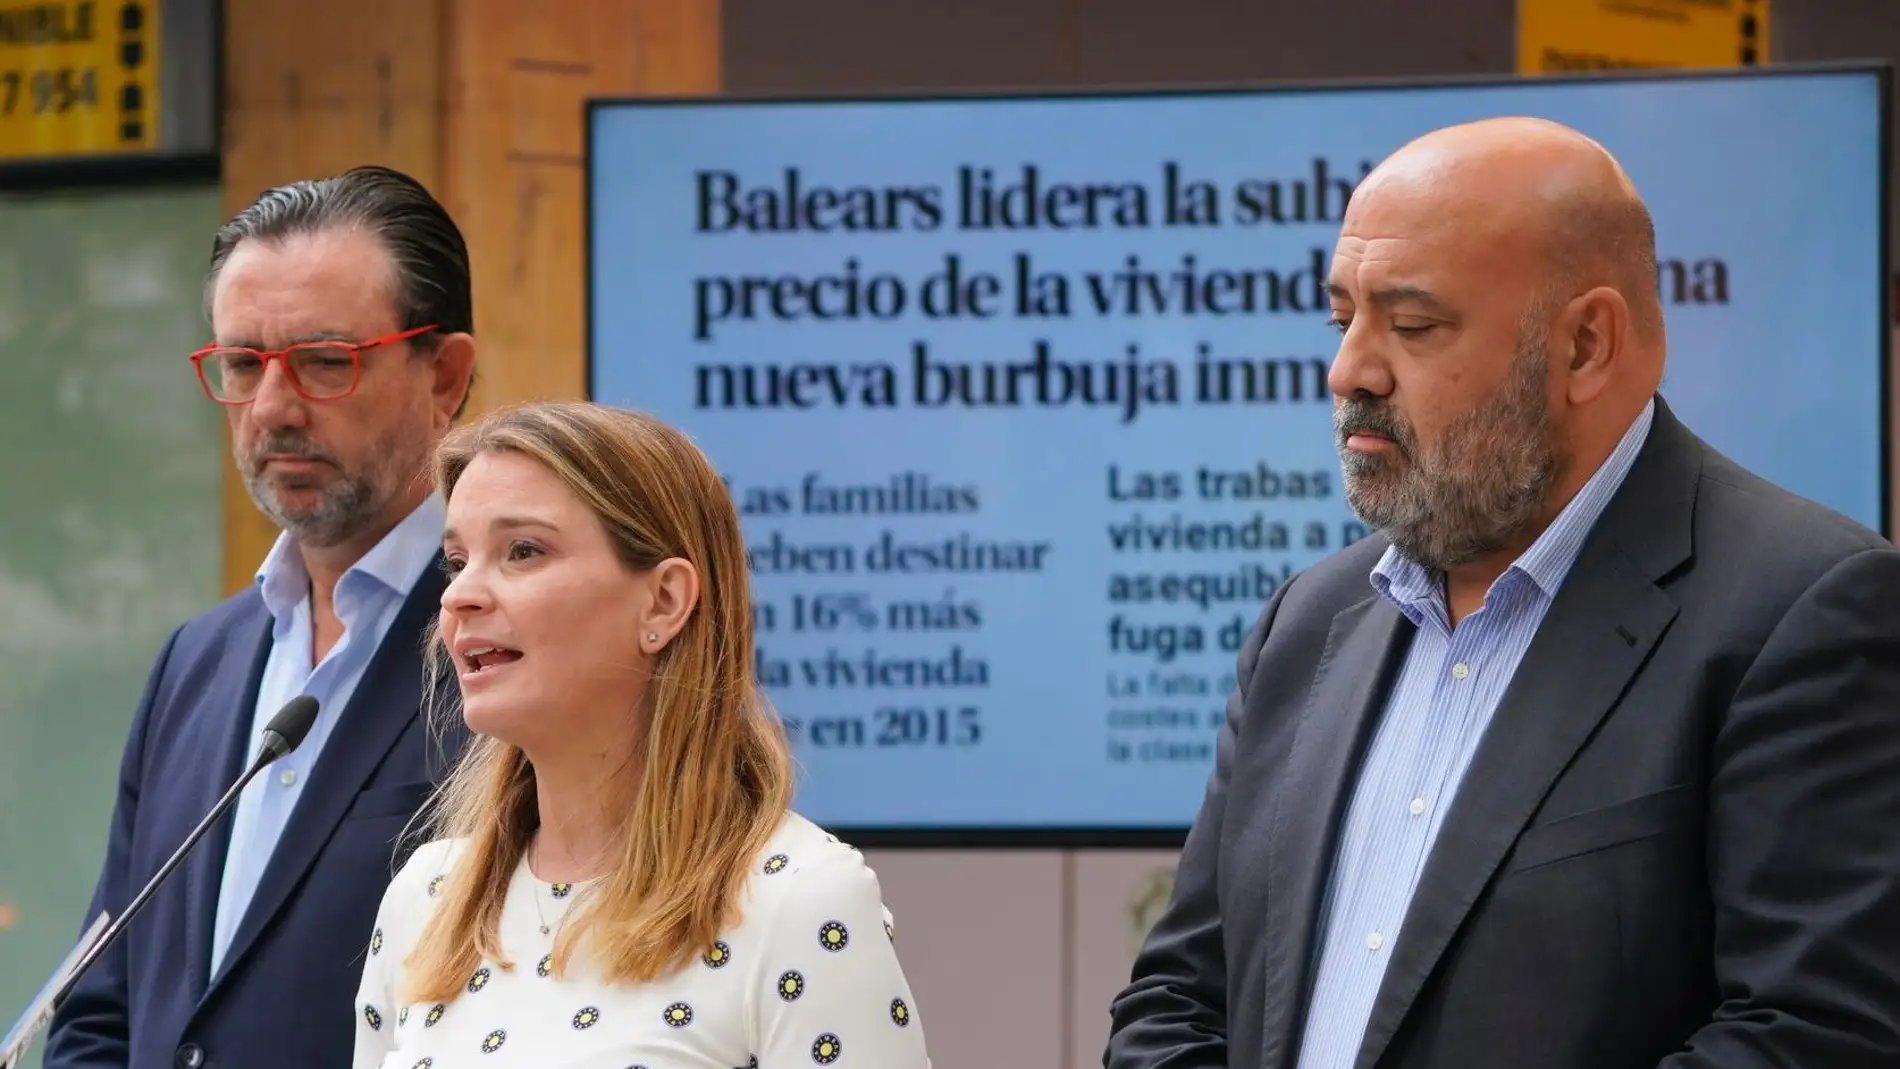 La candidata del PP al Govern Marga Porhens y el candidato a la alcaldía de Palma Jaime Martínez presentan las propuestas en materia de vivienda.